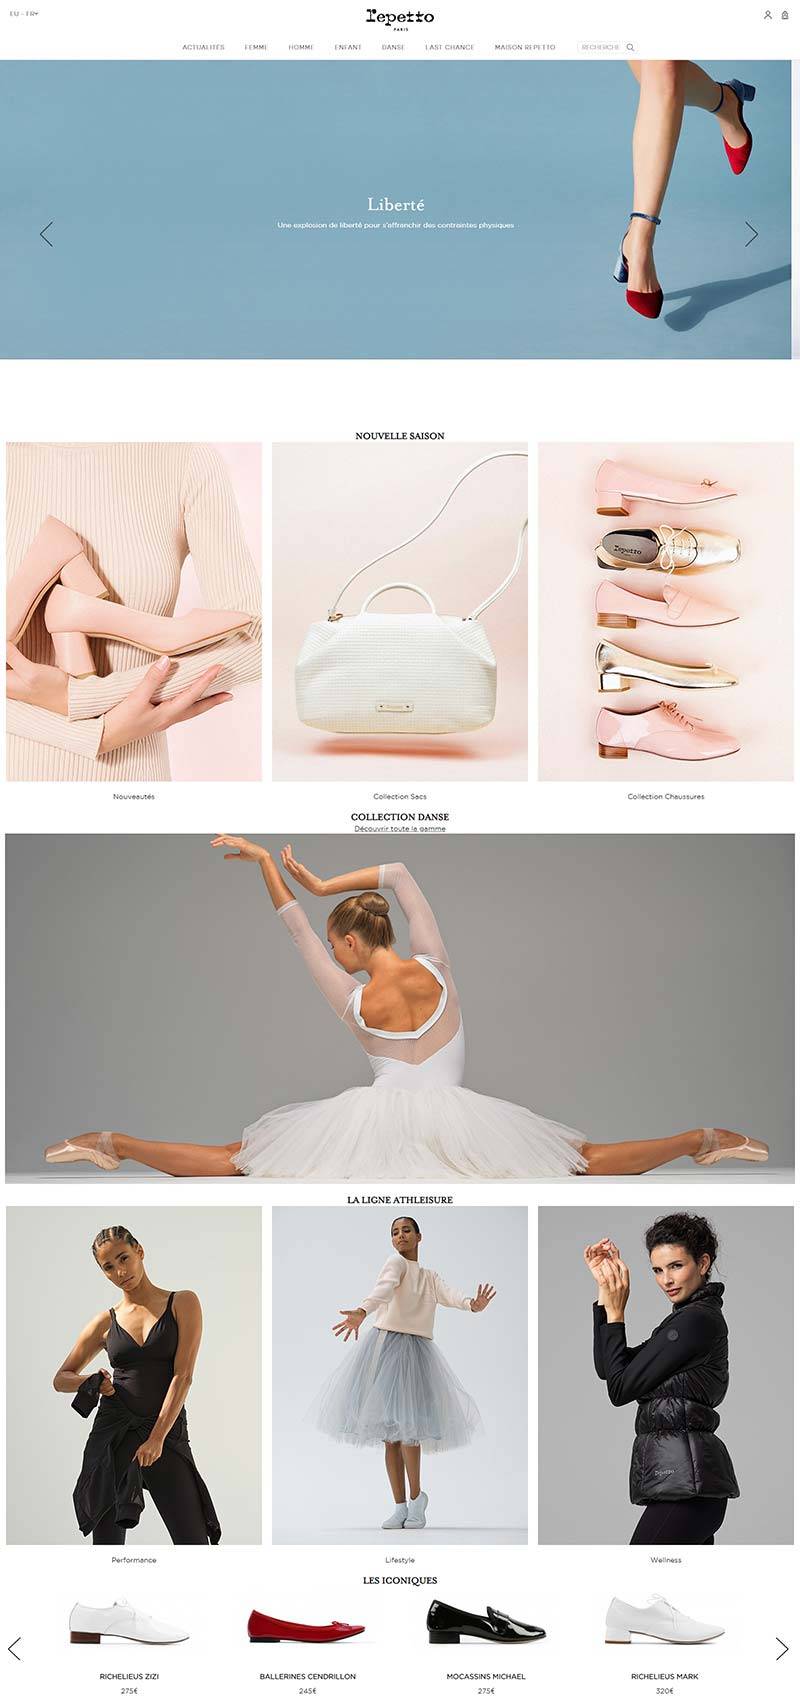 Repetto 法国时尚芭蕾舞鞋品牌网站